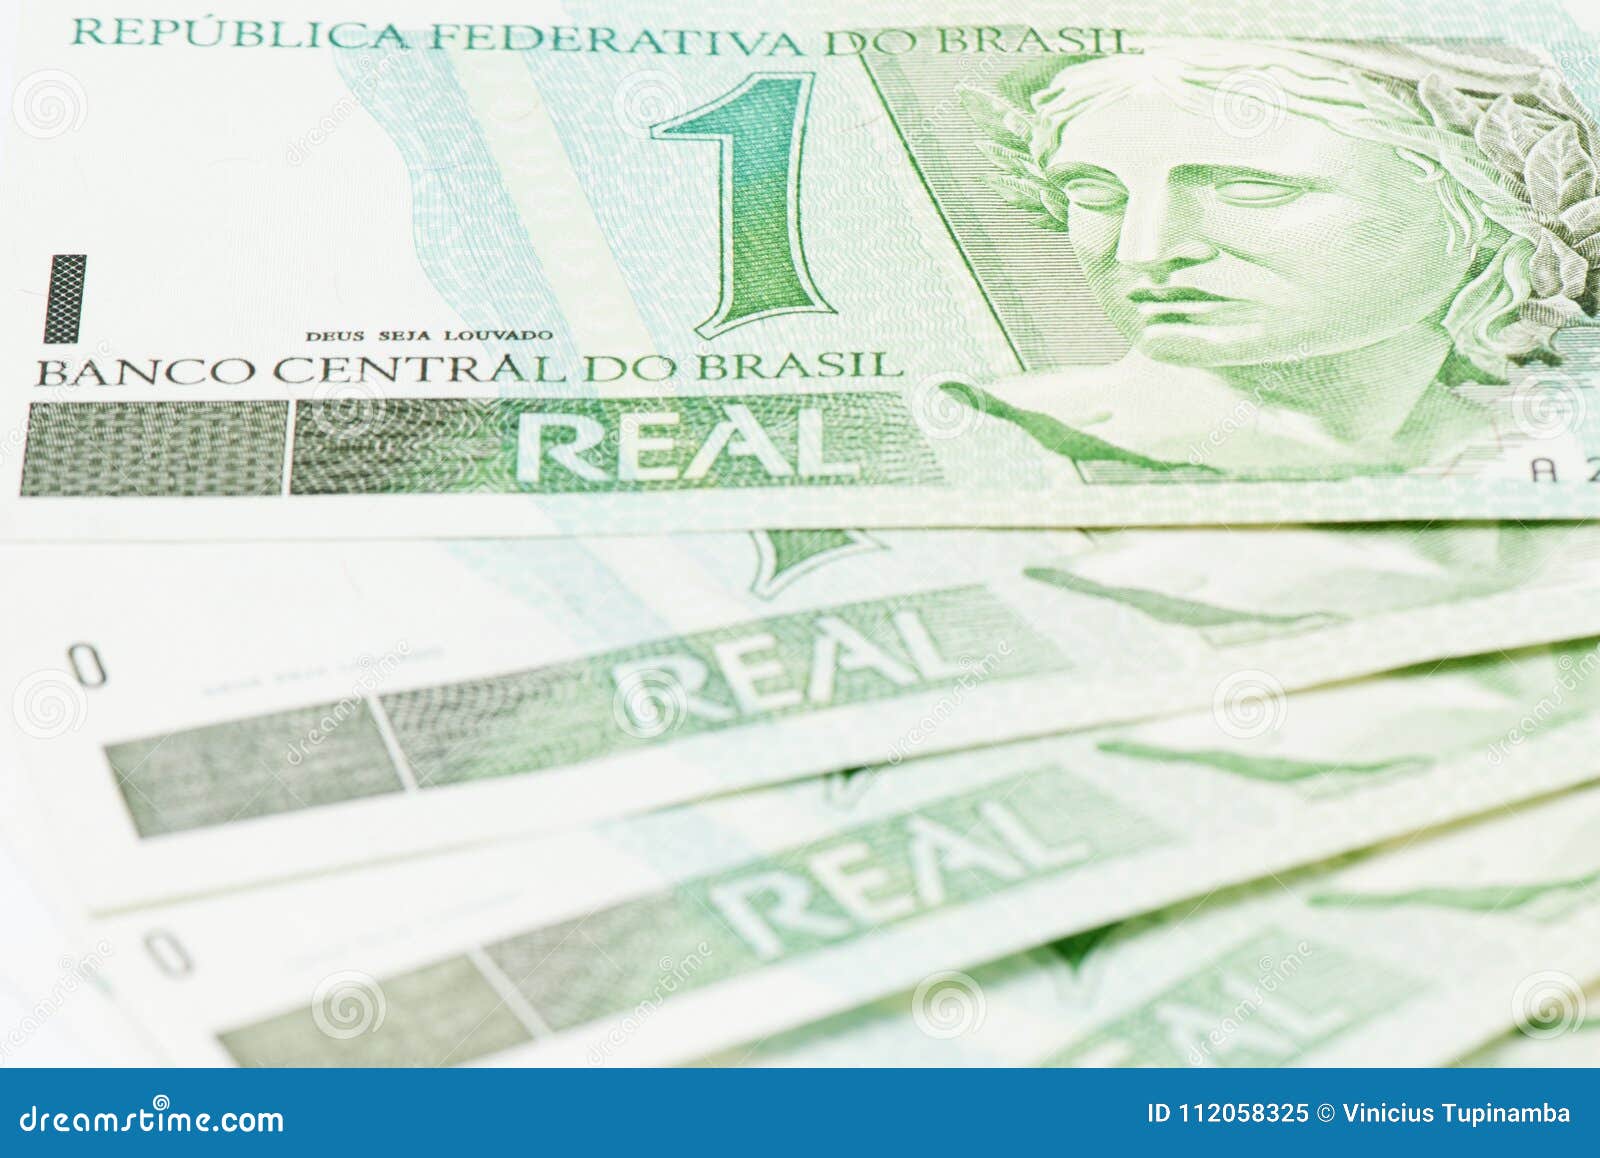 brazilian 1 brl currency